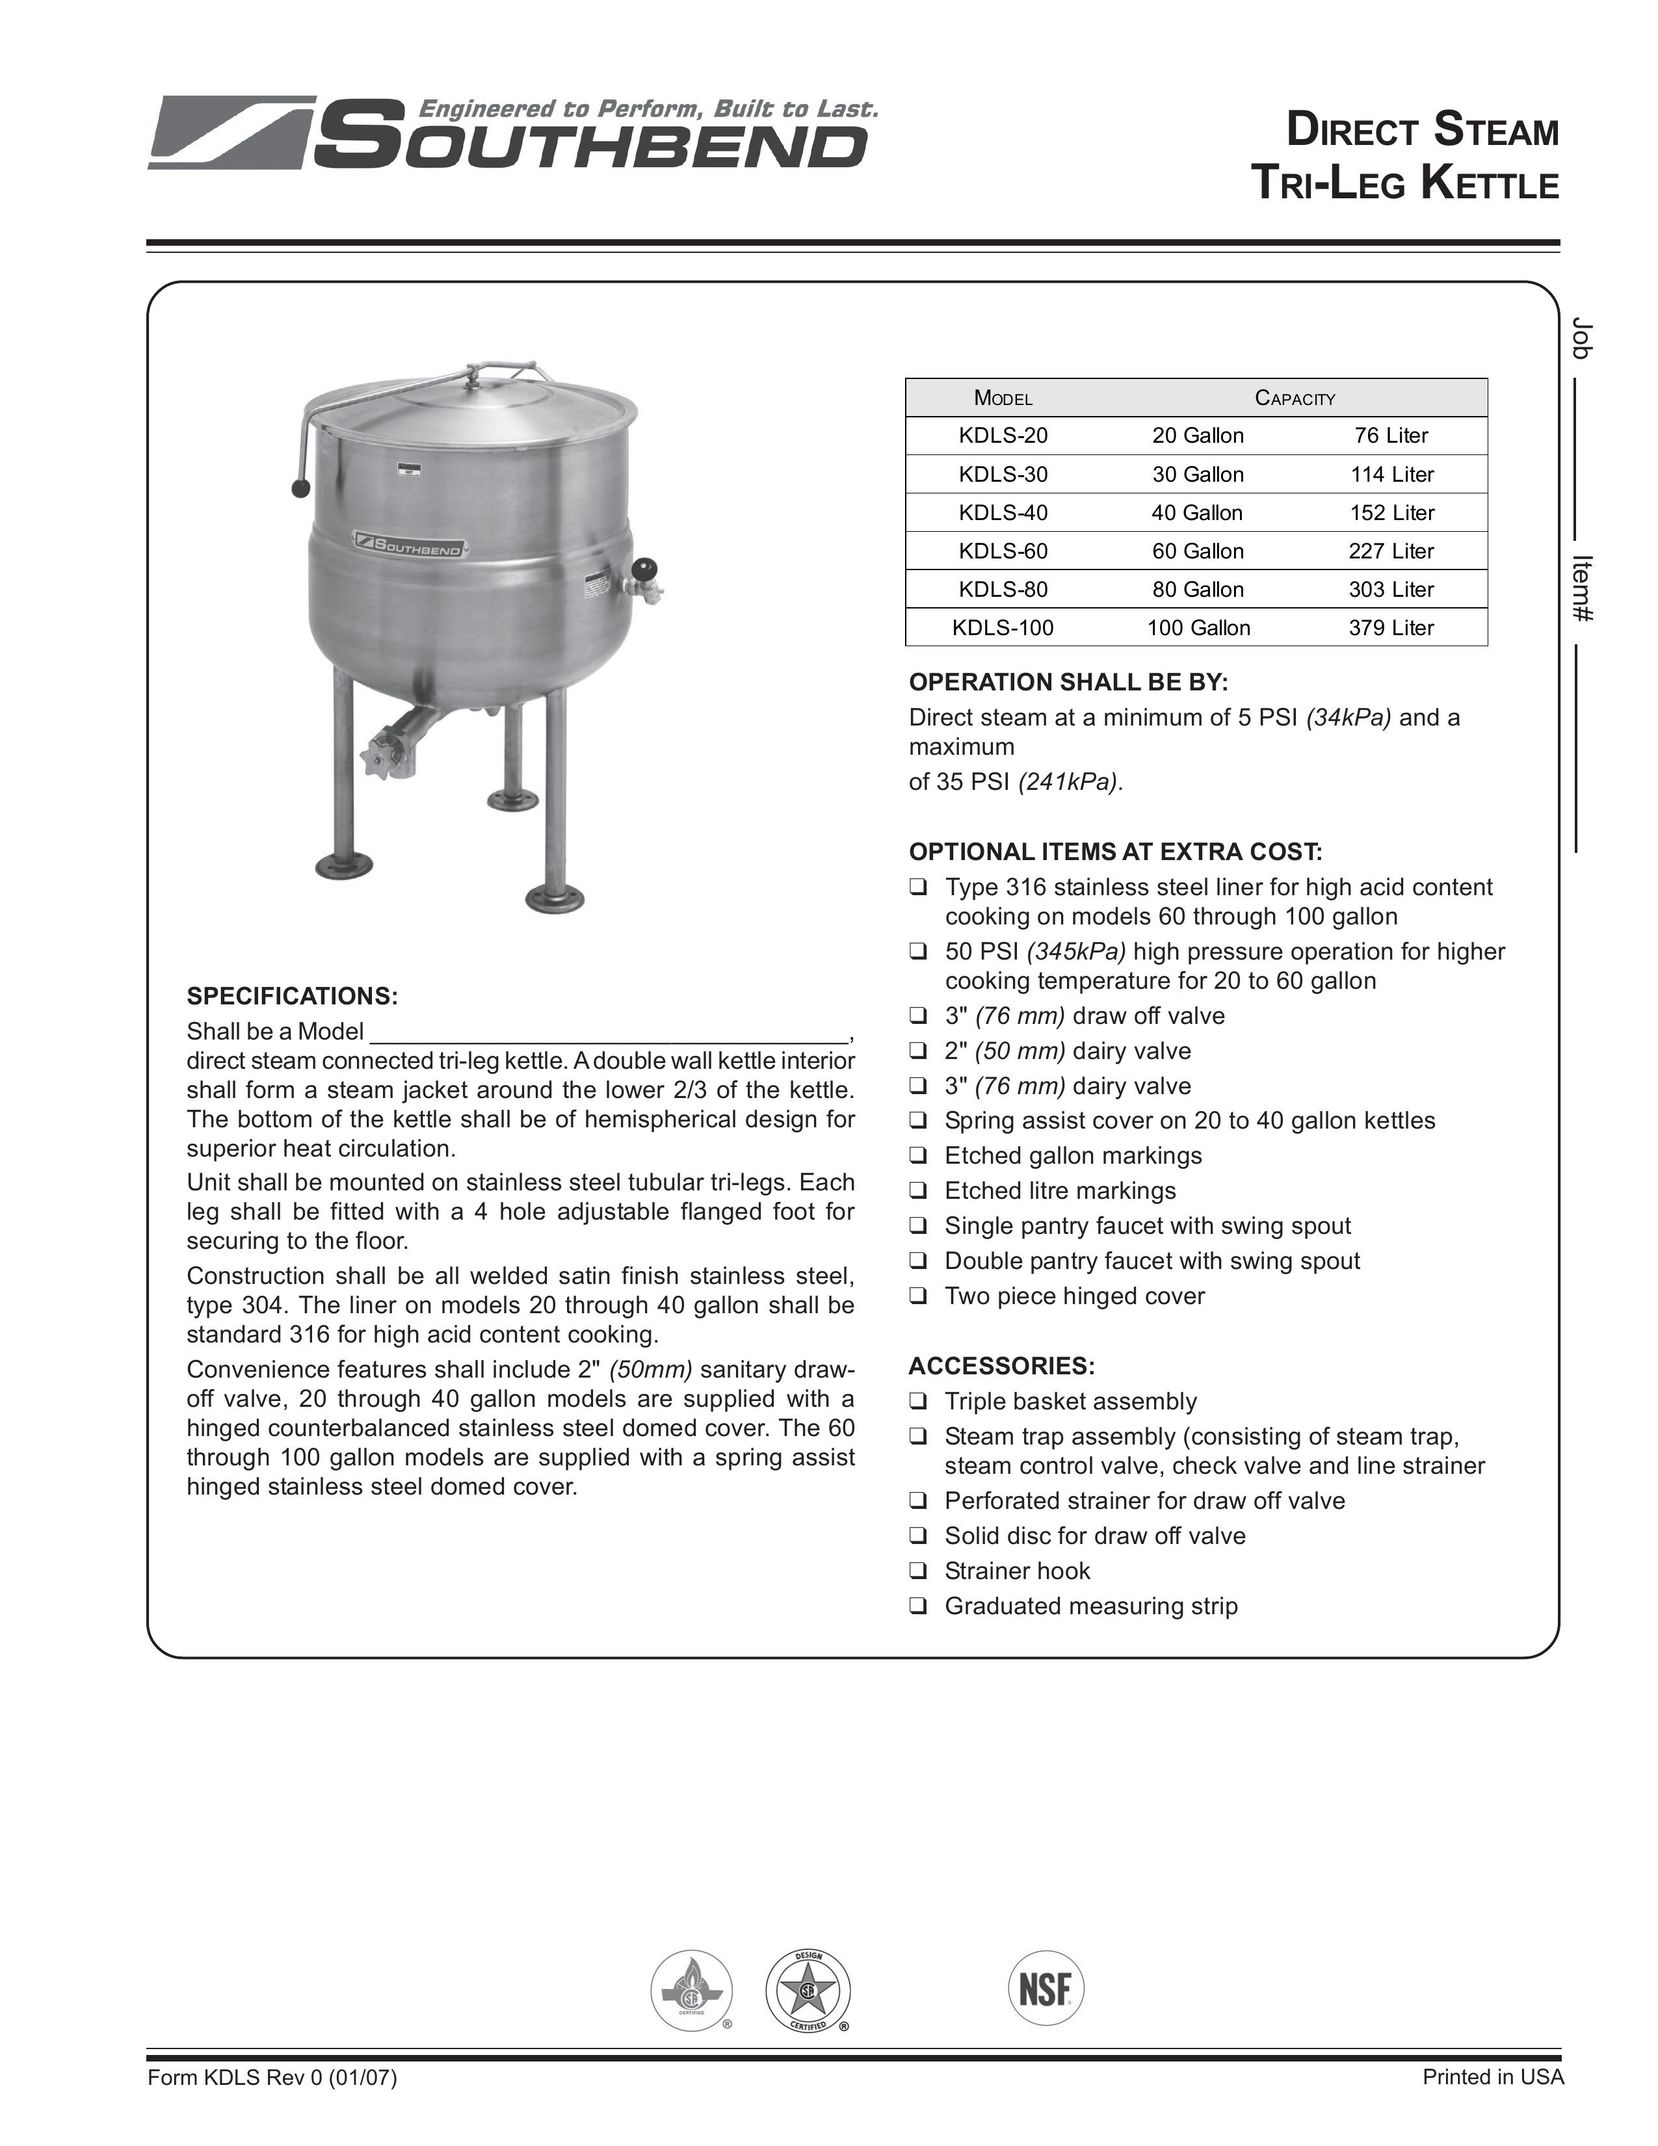 Southbend KDLS-60 Hot Beverage Maker User Manual